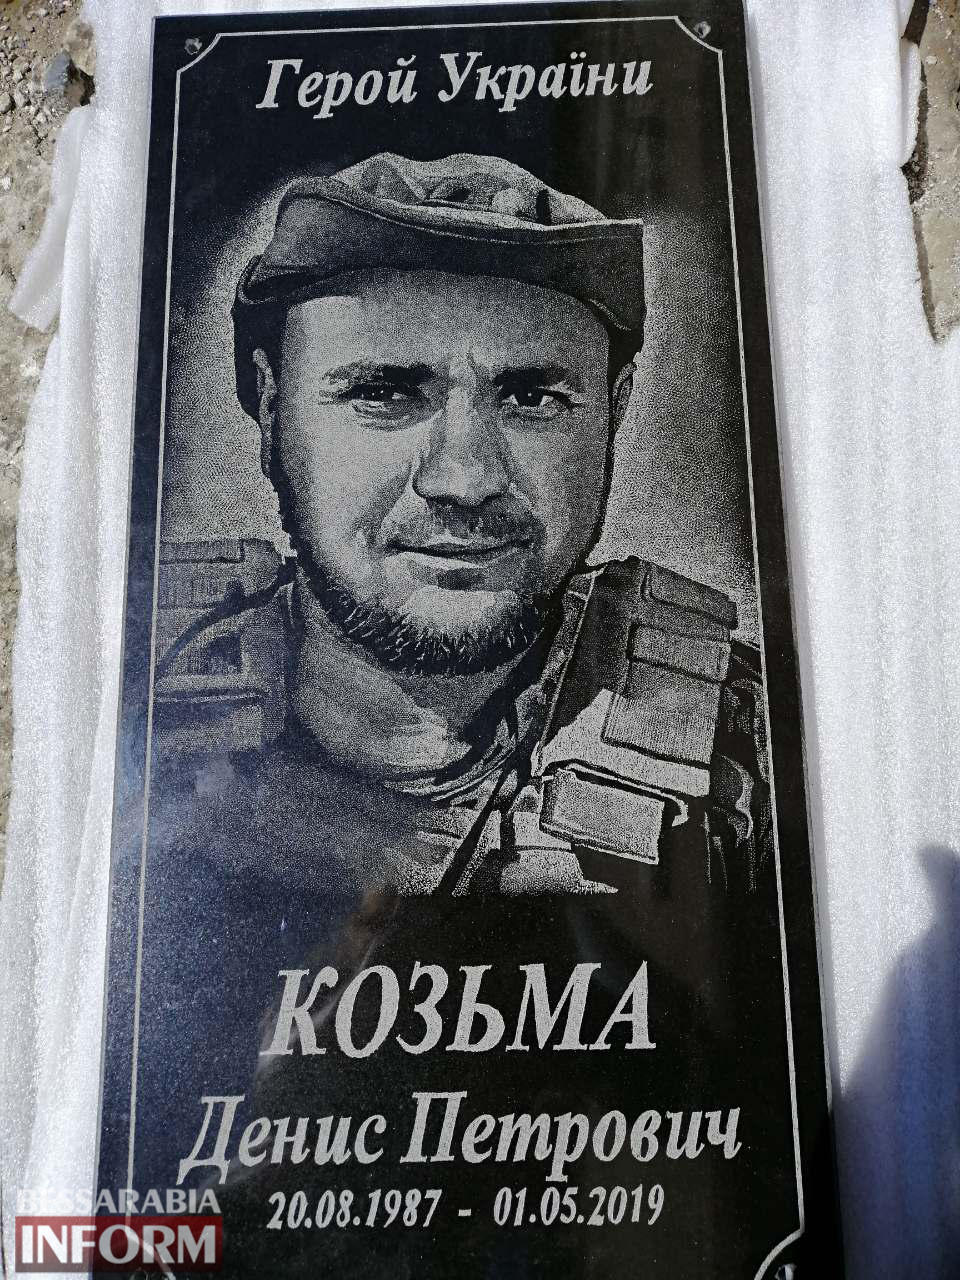 В память о герое: на малой родине погибшего в зоне ООС Дениса Козьмы установлена мемориальная плита